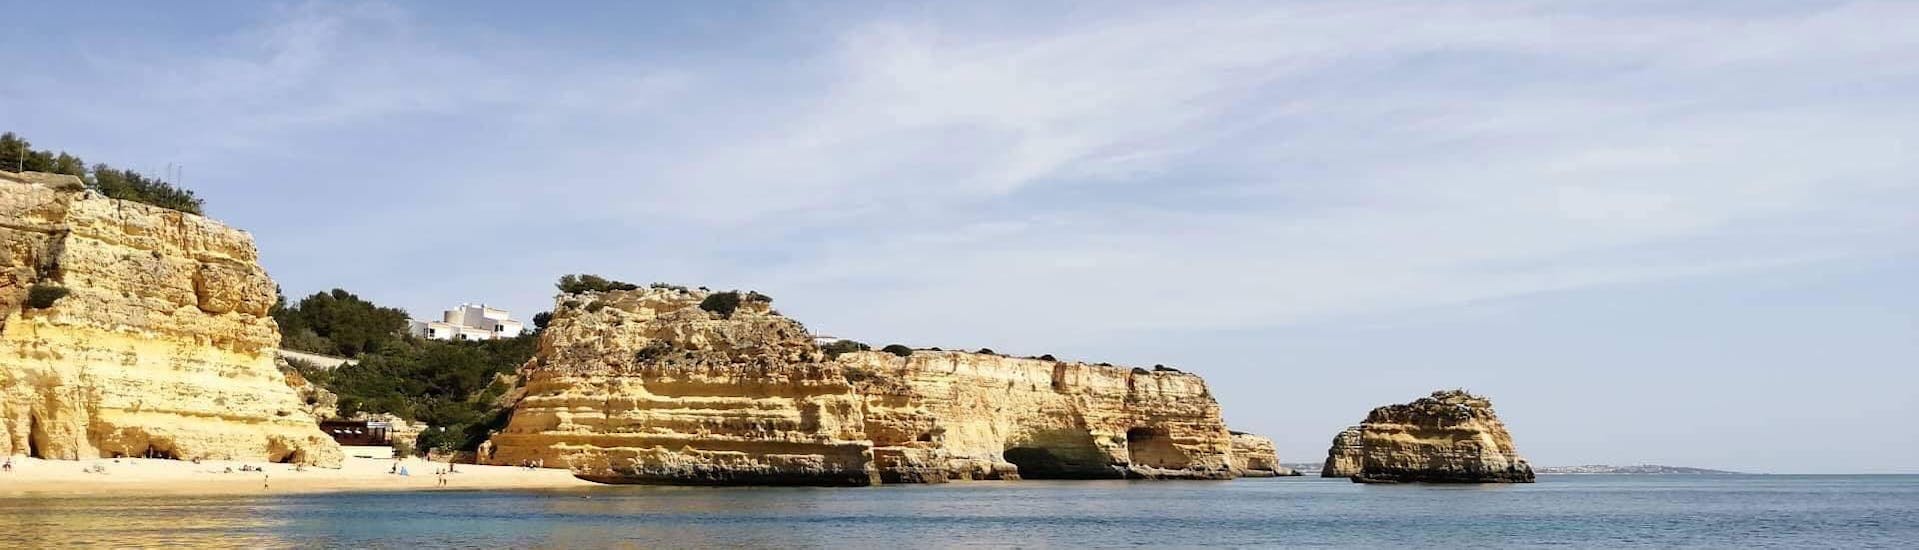 Pendant la balade en bateau vers les grottes de Benagil depuis Portimão avec Royal Nautic Portimão, les participants à la balade peuvent profiter d'une vue incroyable sur d'impressionnantes formations rocheuses sur la mer.